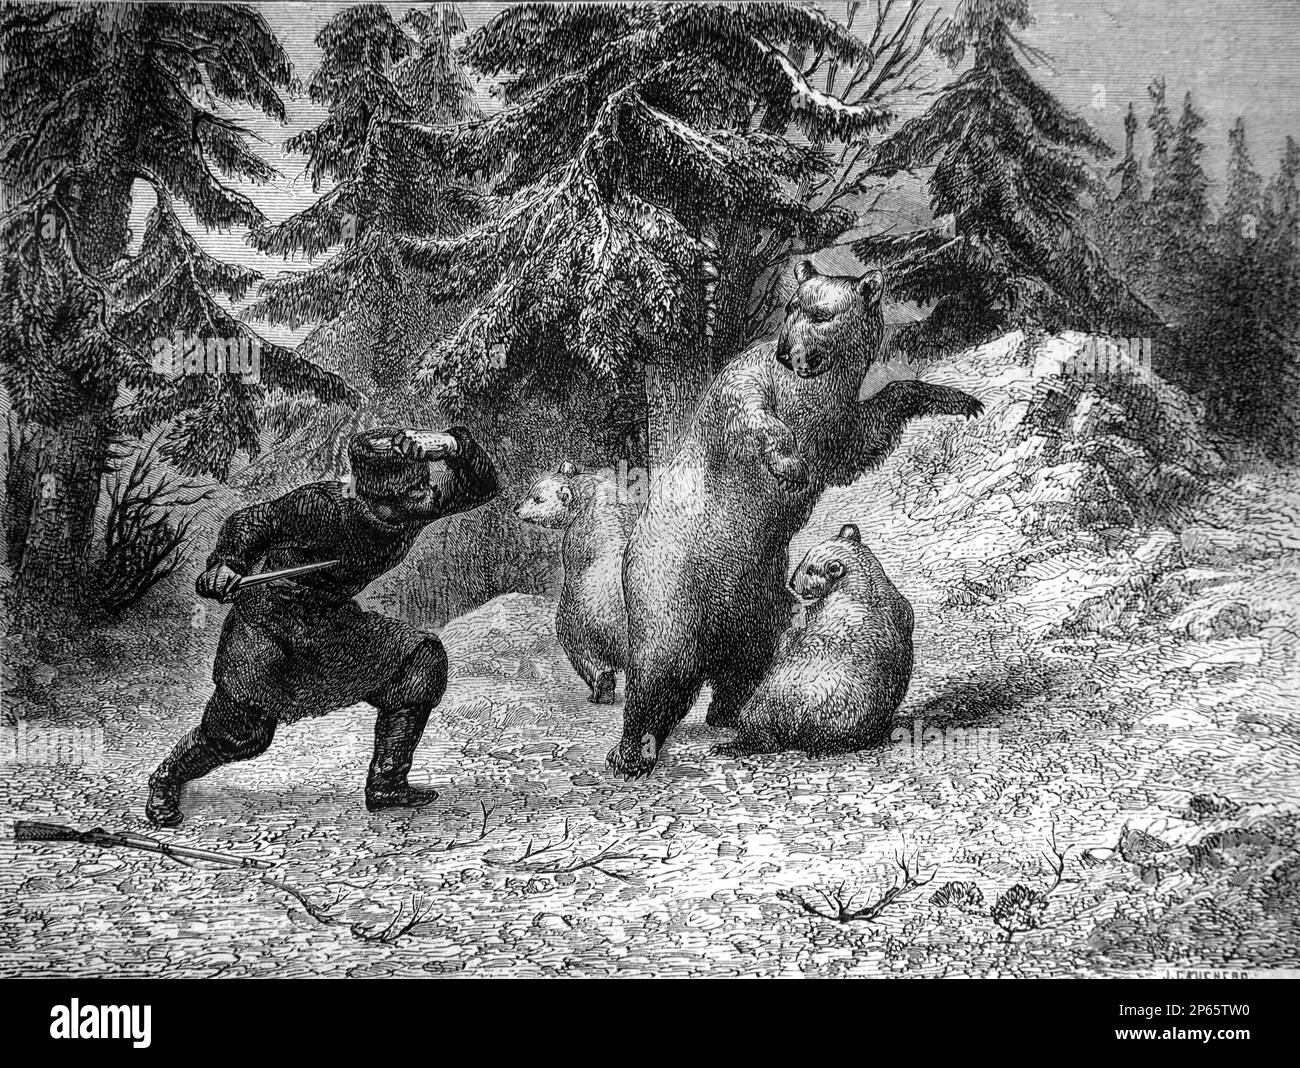 Chasseur sibérien attaquant les ours bruns, Ursus arctos, Sibérie Russie. Gravure ancienne ou illustration 1862 Banque D'Images